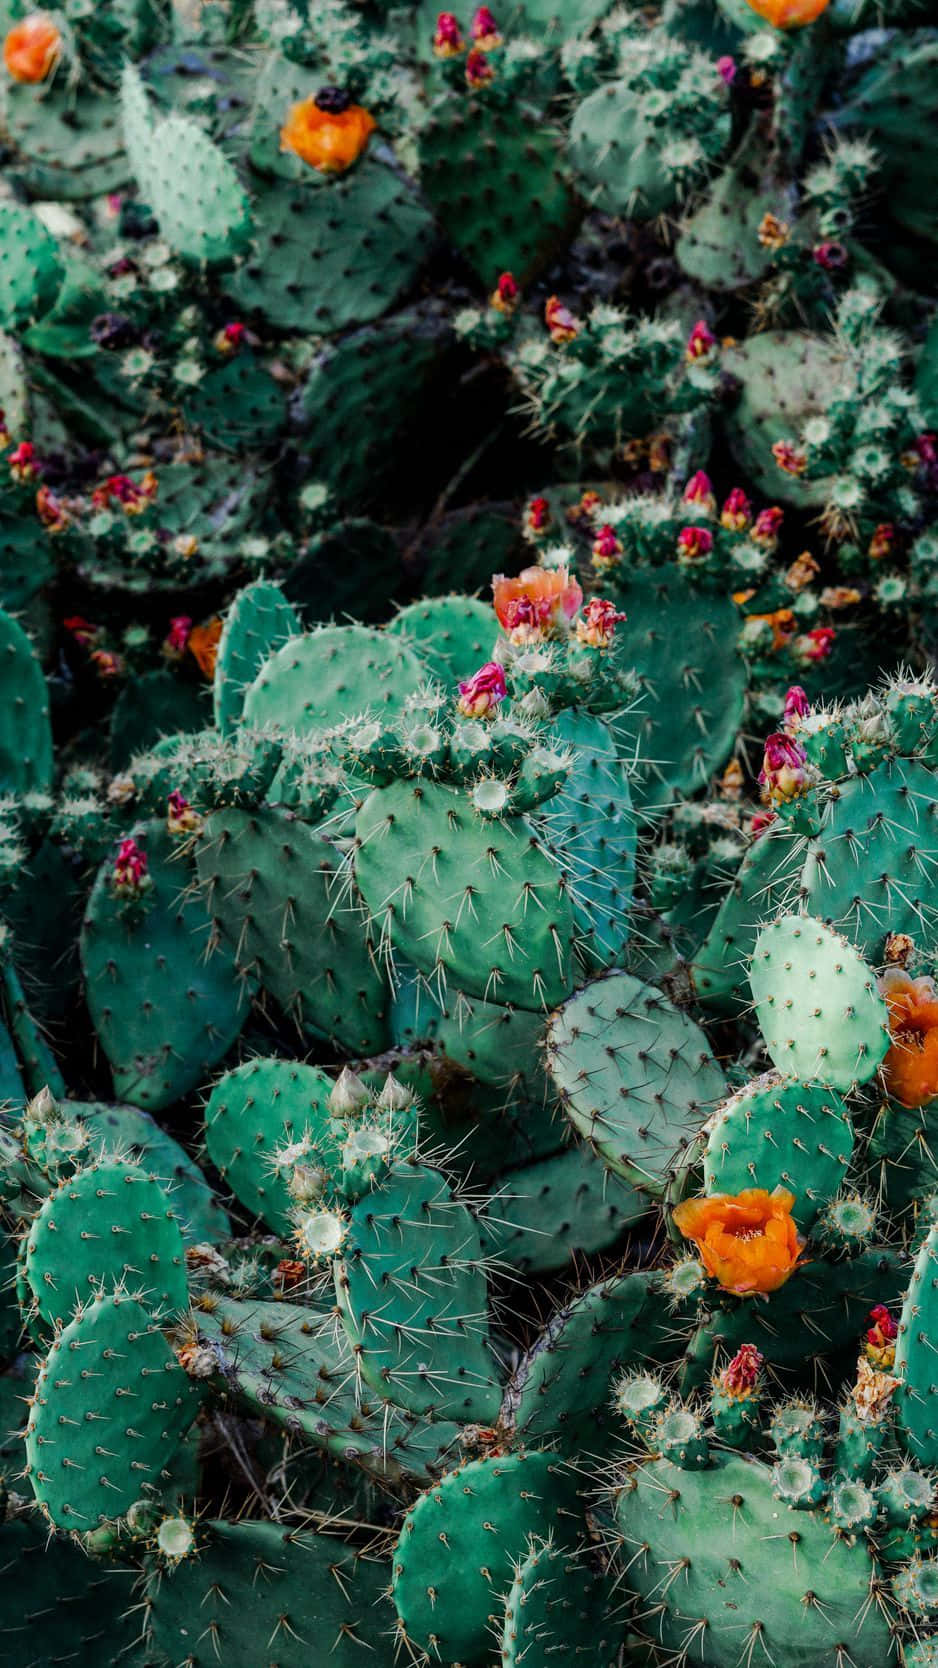 Förnyadin Telefon Med Denna Vackra Kaktus Iphone-bakgrundsbild. Wallpaper